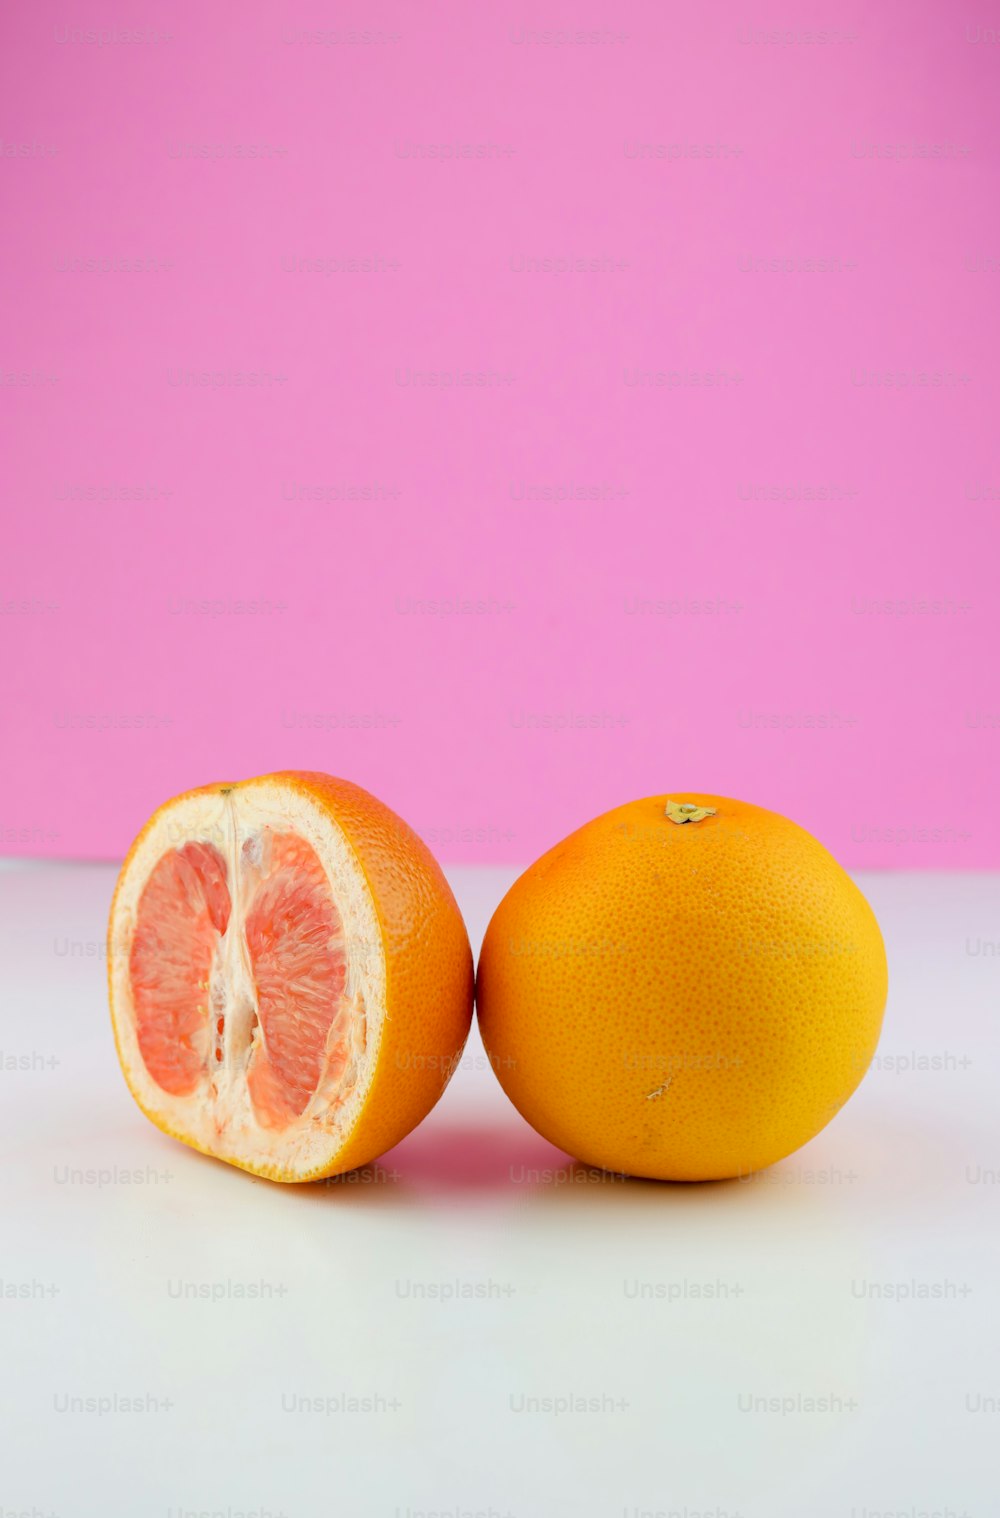 テーブルの上に座って半分に切った2つのオレンジ